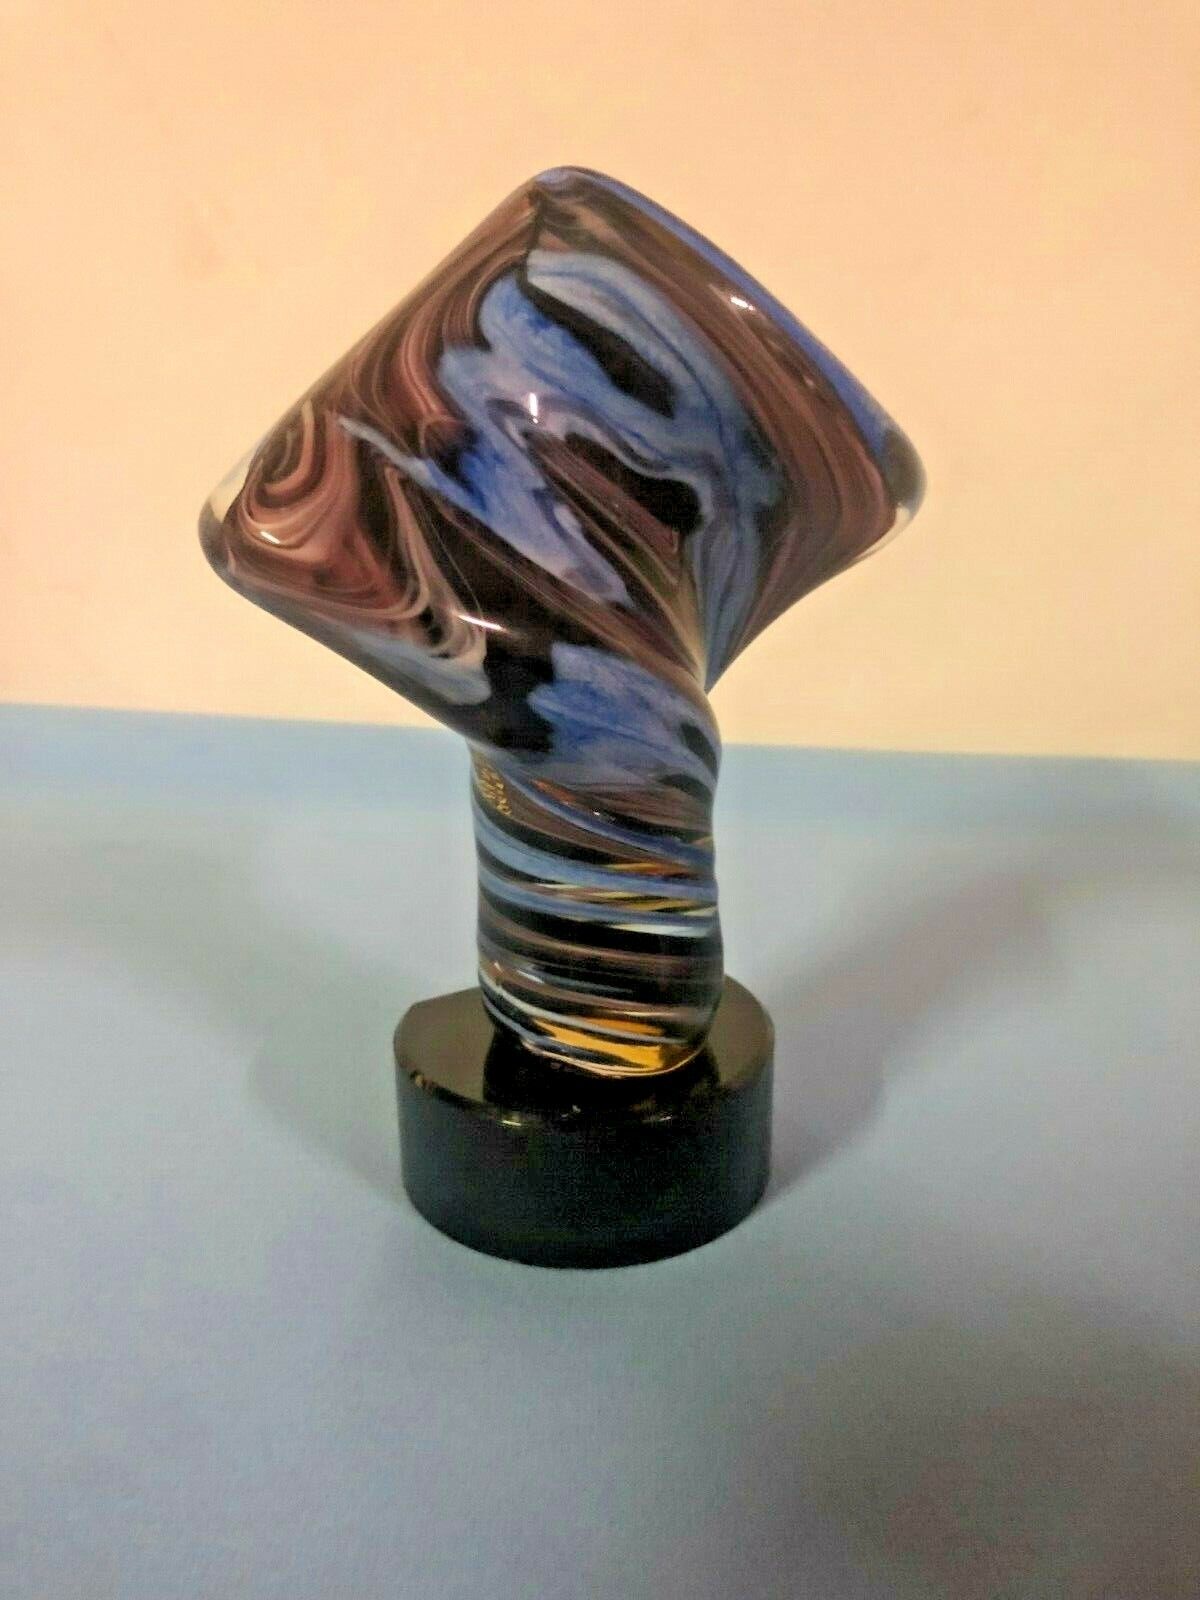 7" Crystal Blue Swirl Art Glass Golden Twist Trophy / Award / New in Box